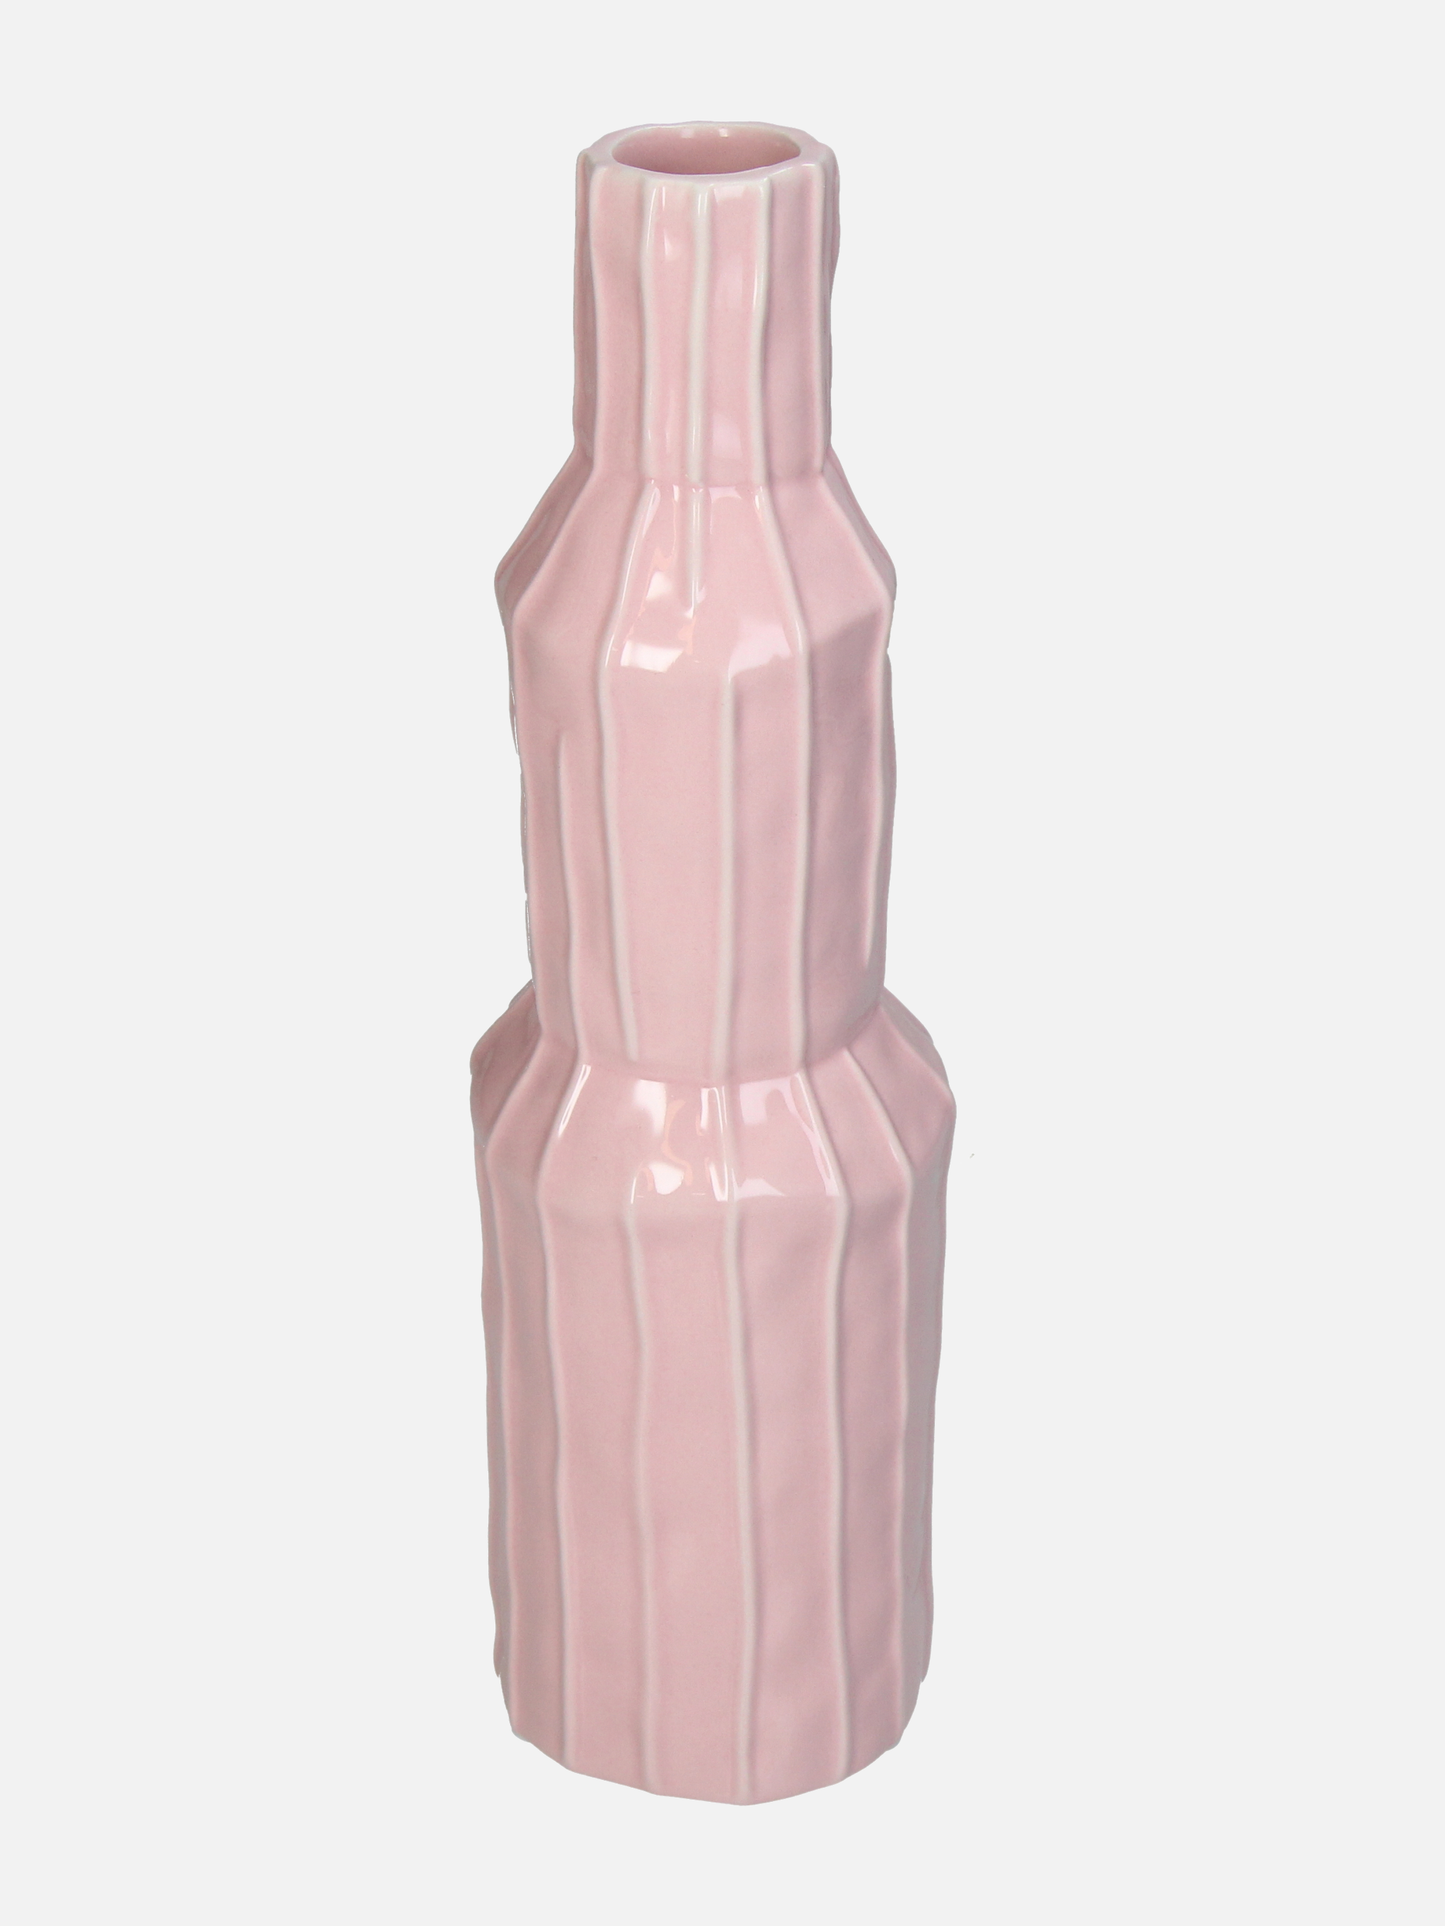 Pink Stoneware Vase